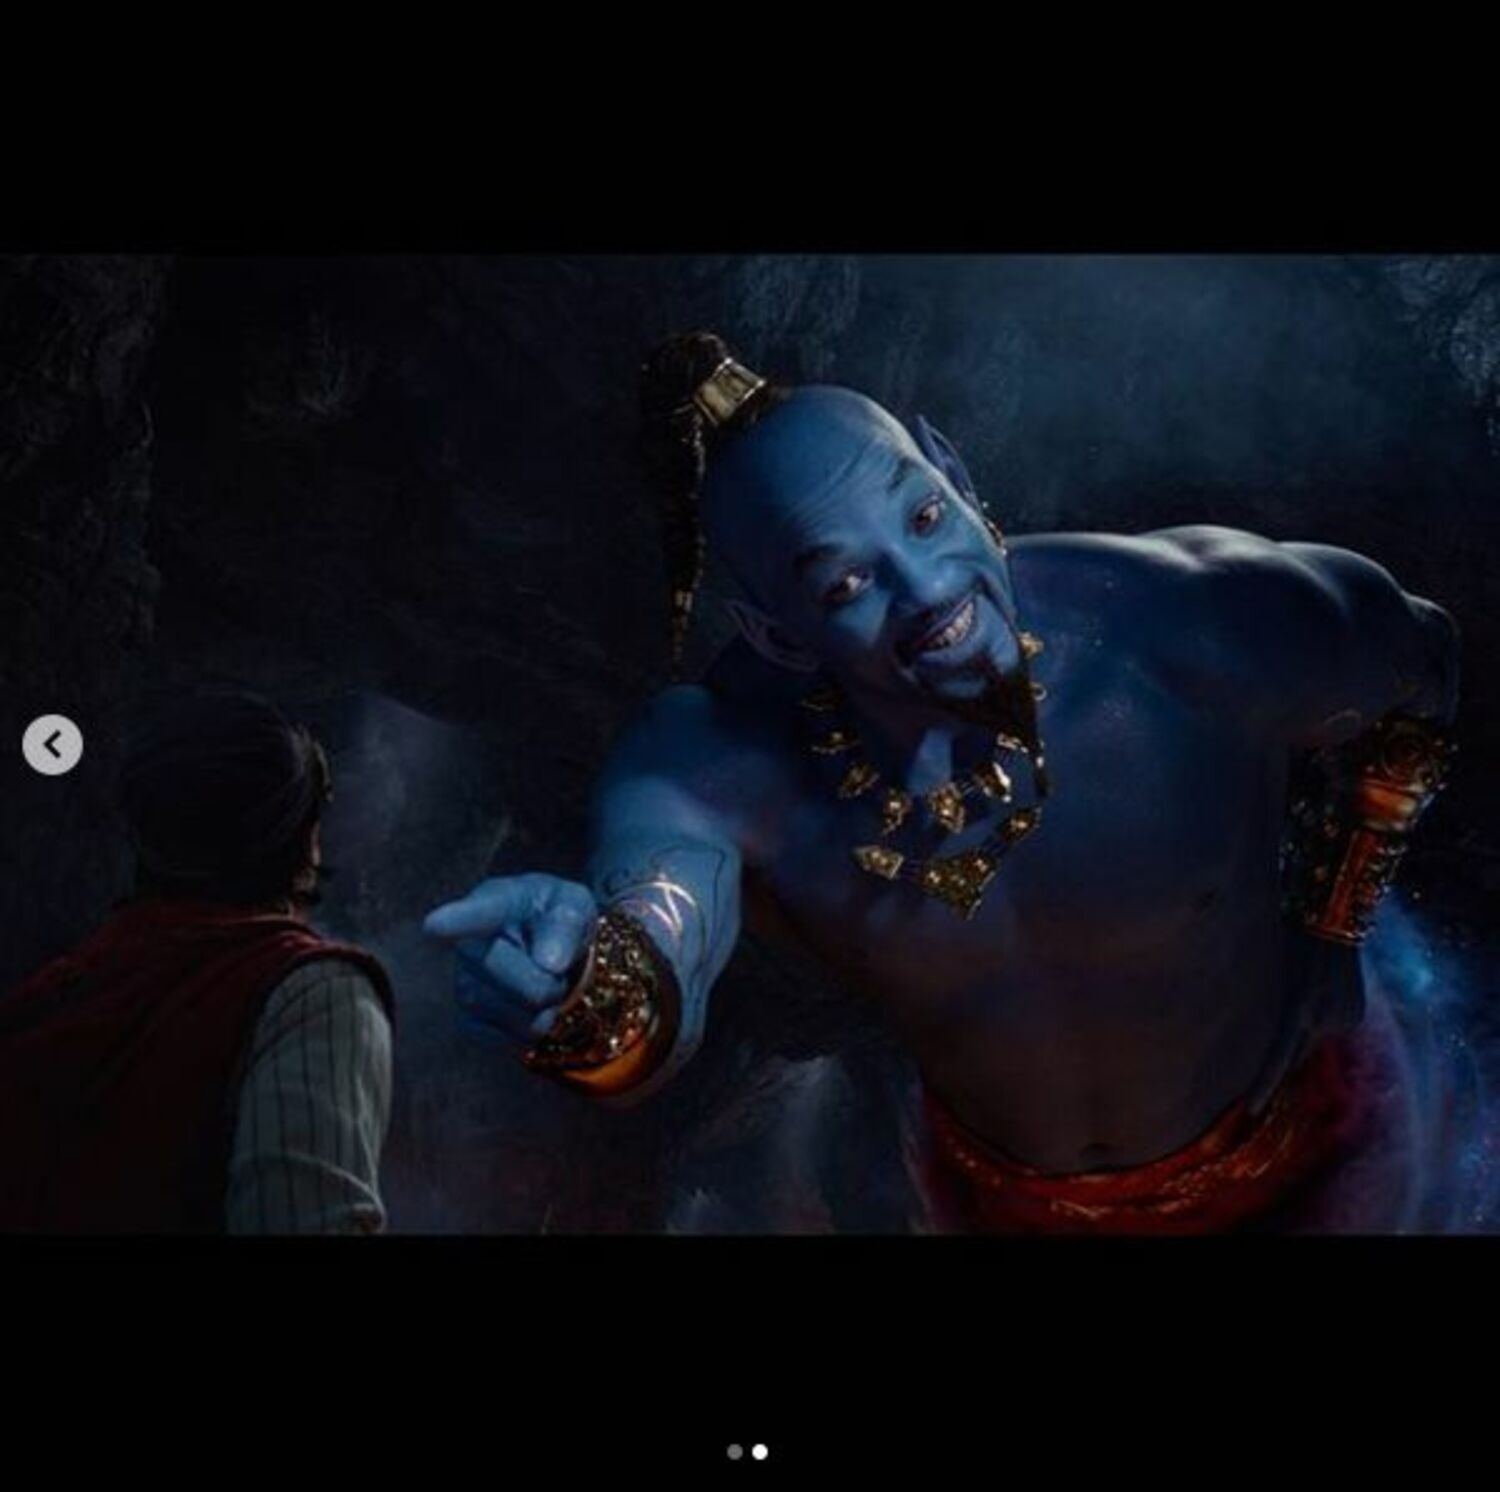 実写版『アラジン』ウィル・スミス演じるジーニーの「驚きの青さ」にネット騒然!?の画像